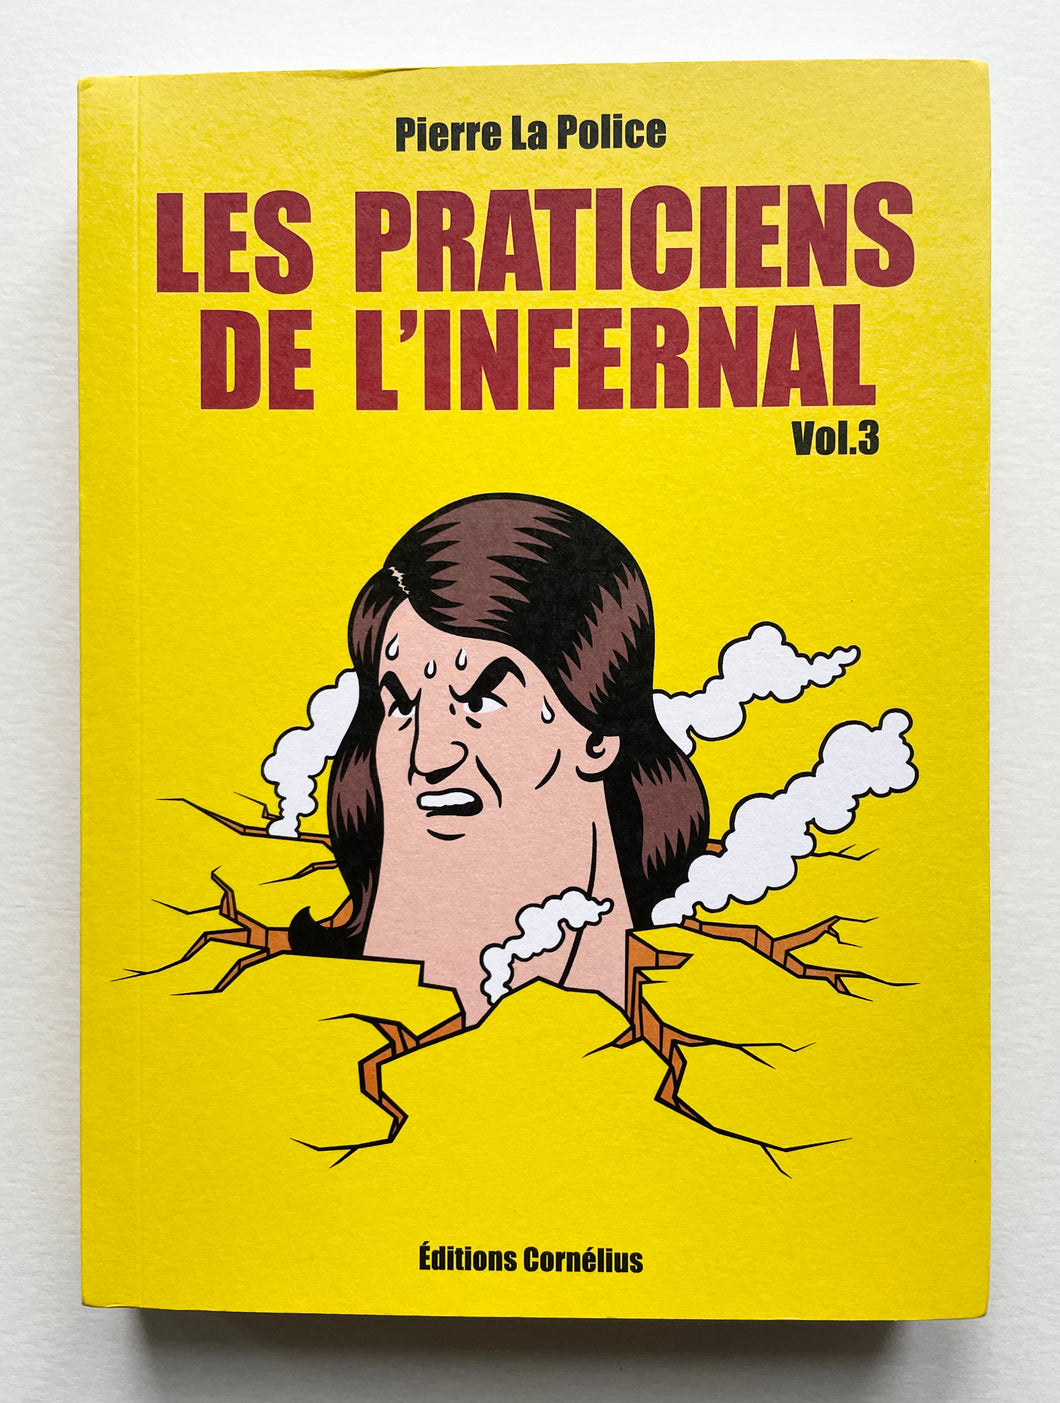 Les praticiens de l’infernal vol.3 | Pierre La Police (Cornélius)